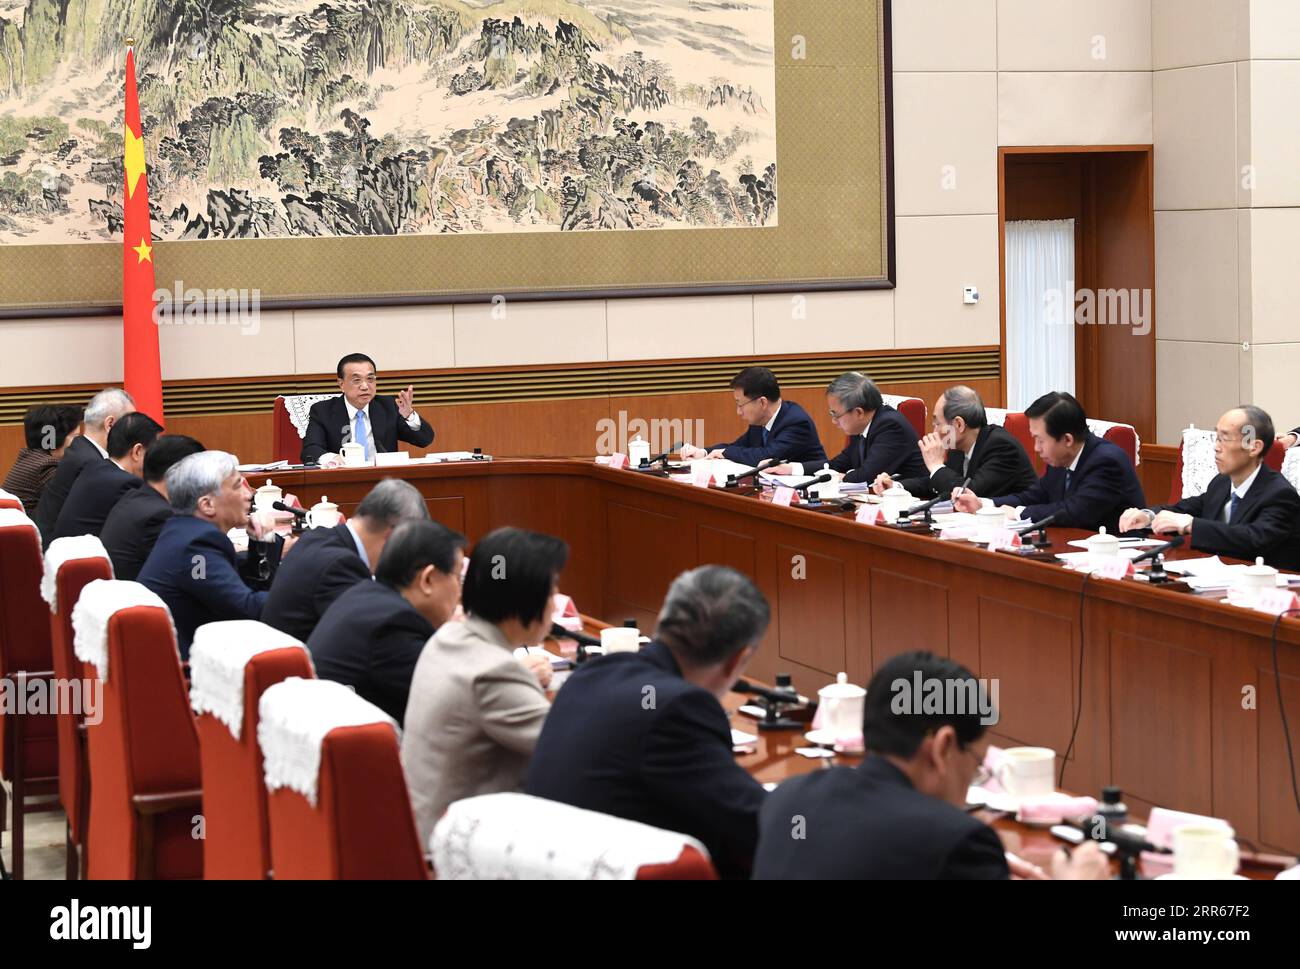 210129 -- PEKING, 29. Januar 2021 -- der chinesische Ministerpräsident Li Keqiang, ebenfalls Mitglied des Ständigen Ausschusses des Politischen Büros des Zentralkomitees der Kommunistischen Partei Chinas (KPCh), führt den Vorsitz über ein Symposium zur Einholung von Stellungnahmen zu einem Entwurf des Regierungsarbeitsberichts, sowie den Entwurf des 14. Fünfjahresplans und die langfristigen Ziele bis zum Jahr 2035 am 29. Januar 2021. Auf dem Symposium hörte Li Vorschläge zu den beiden Dokumenten von nicht-kommunistischen Parteien, der All-China Federation of Industry and Commerce, sowie von Personen ohne Parteizugehörigkeit. Vize-Premier Han Zheng, ebenfalls ein Stockfoto